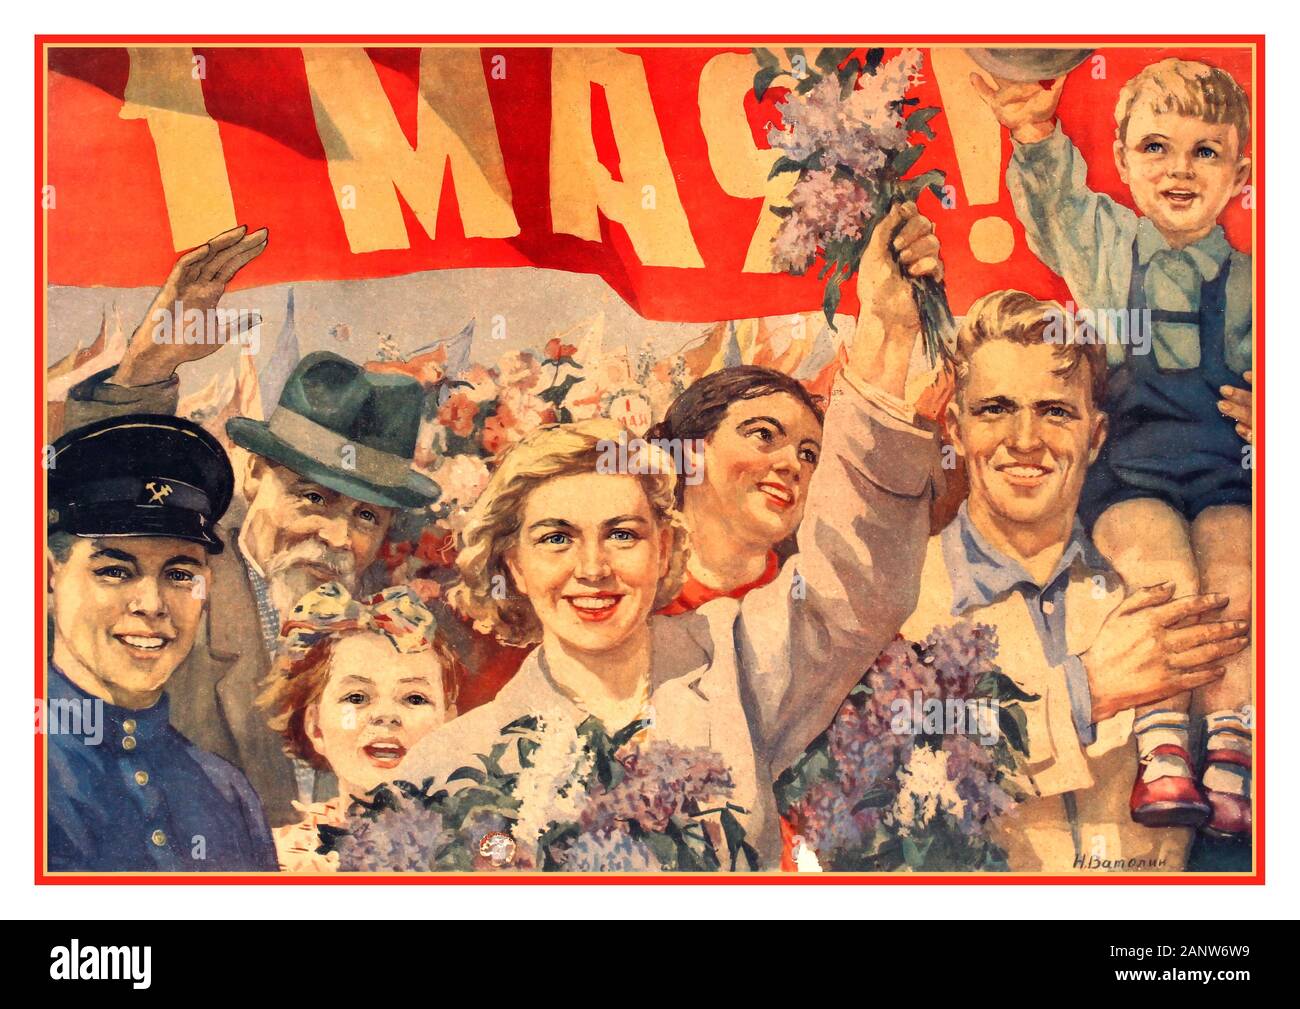 Mai das russische Propagandaplakat der sowjetischen Propaganda in den 1950er Jahren, das die kommunistischen Demonstrationen vom 1. Mai in der UdSSR feierte. Kunstwerk von N. Vatolina, das eine Menge lächelnder Demonstranten zeigt, darunter Familien mit Kindern, die unter einem roten Banner vom 1. Mai marschieren. Der 1. Mai ist ein Urlaub in vielen Ländern der Welt und wird als Arbeits- und Frühlingstag in Russland der sowjetischen UdSSR bezeichnet Stockfoto